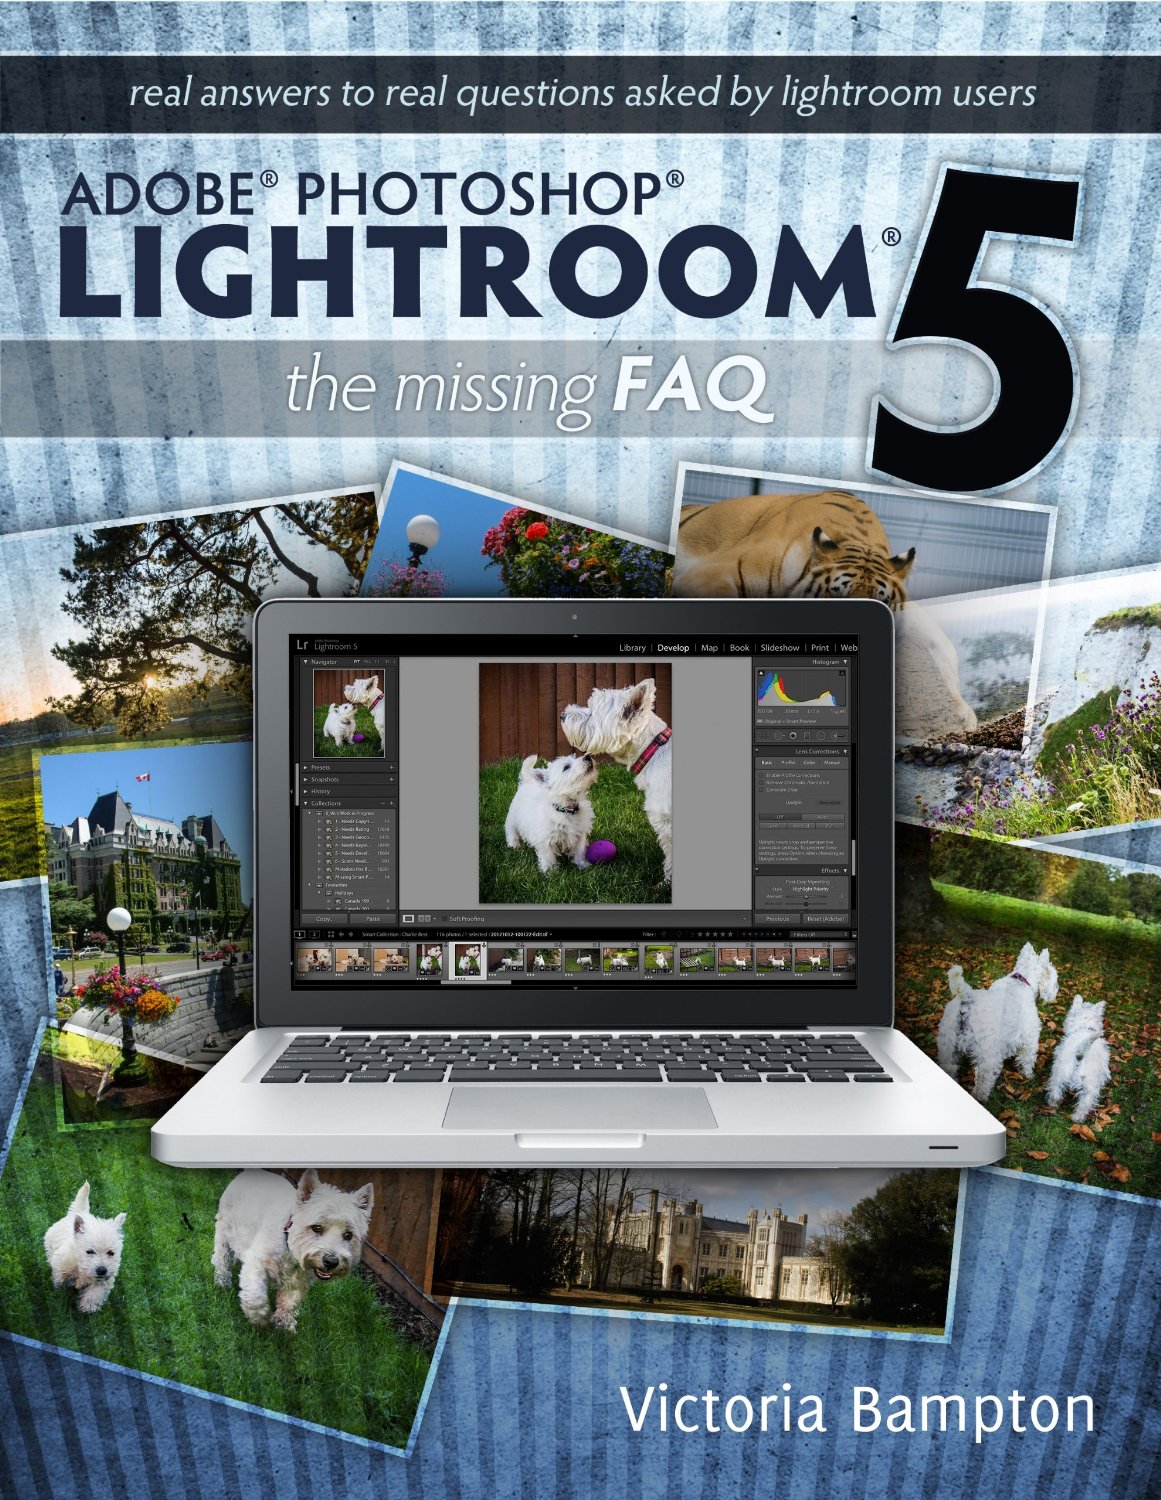 lightroom 5 ebooks